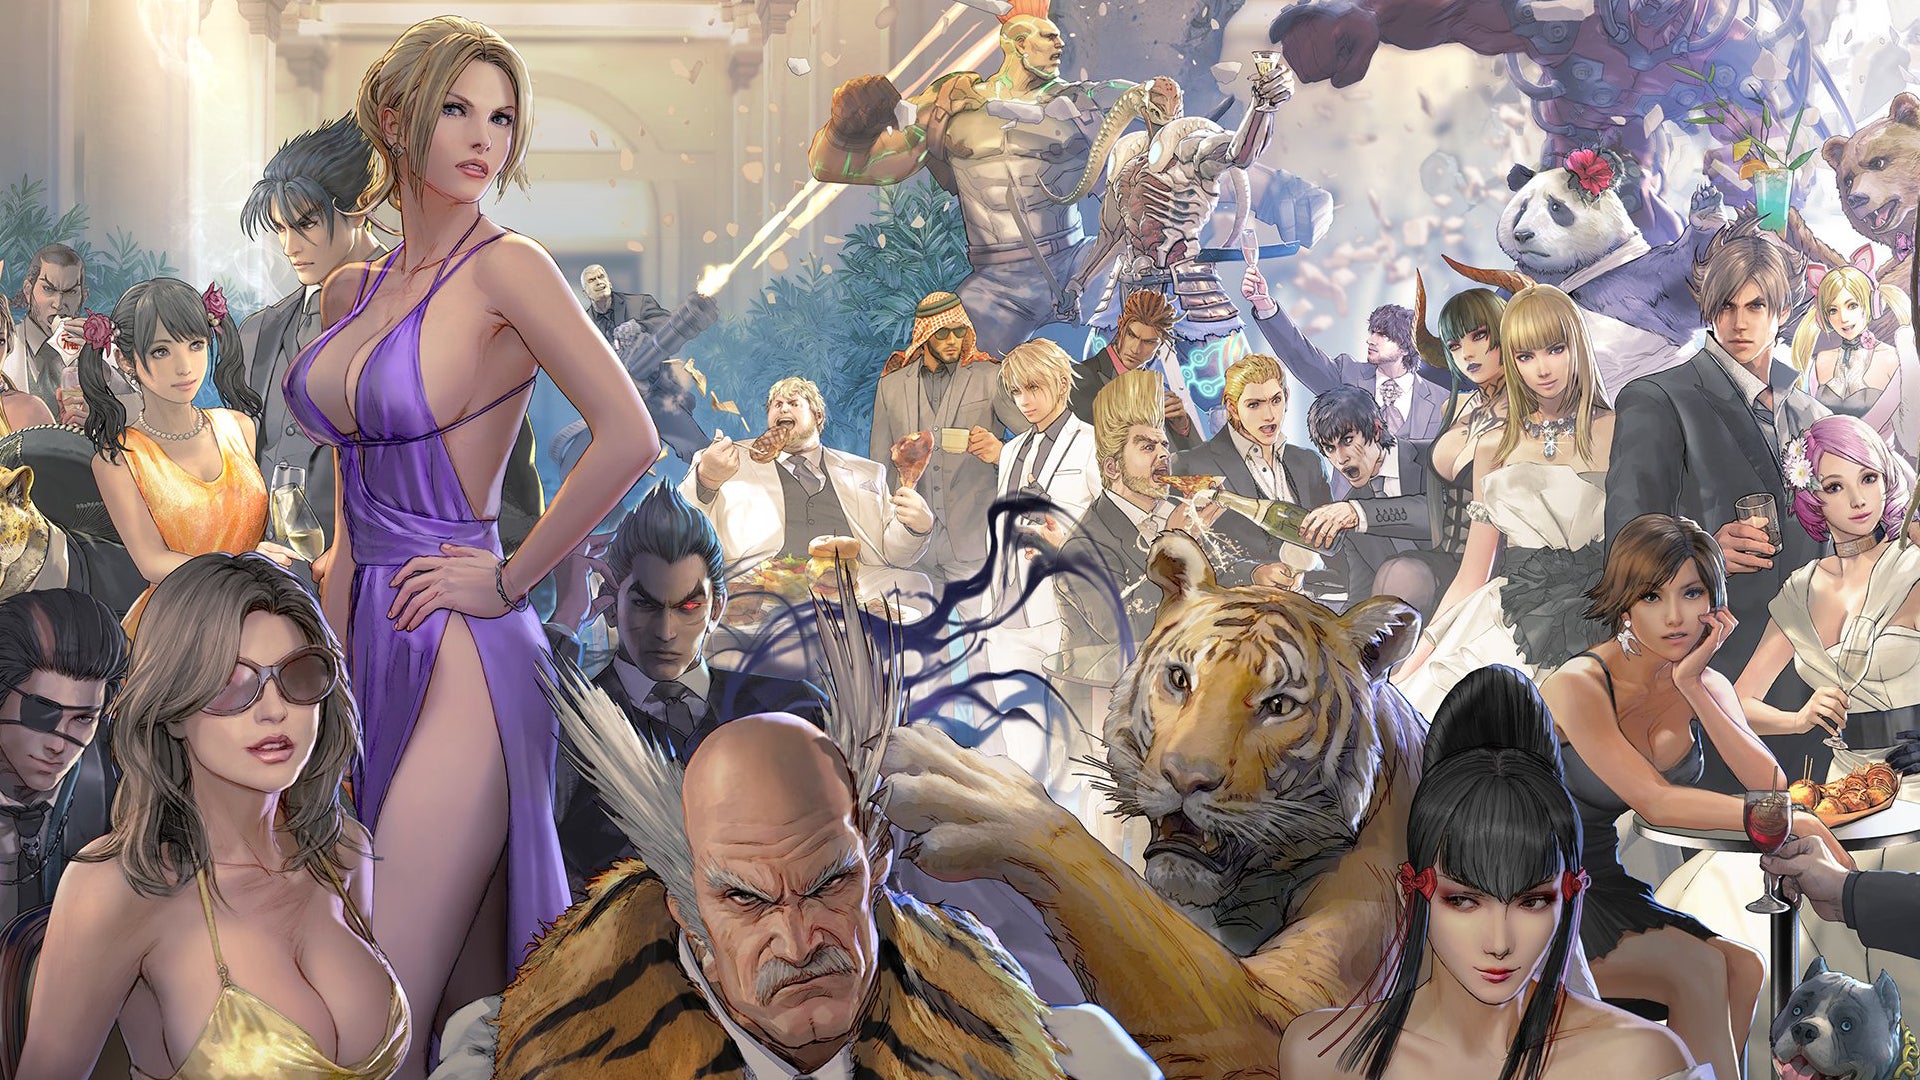 Tekken 7 passes 9 million sales as speculation around Tekken 8 continues - VG247